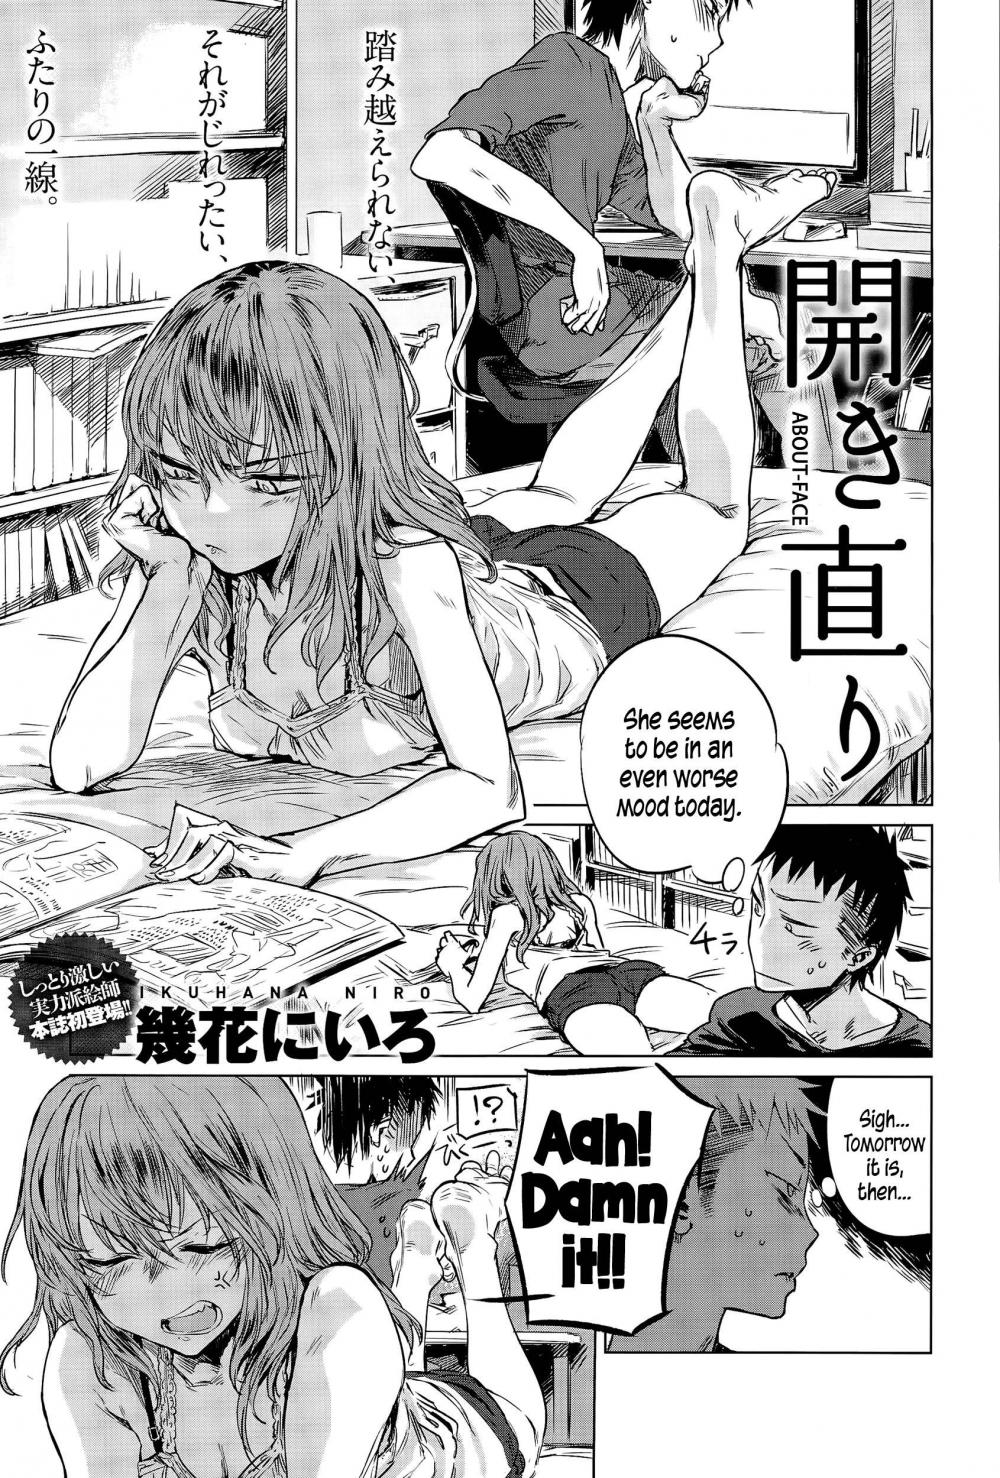 Manga erotic Manga Erotica: